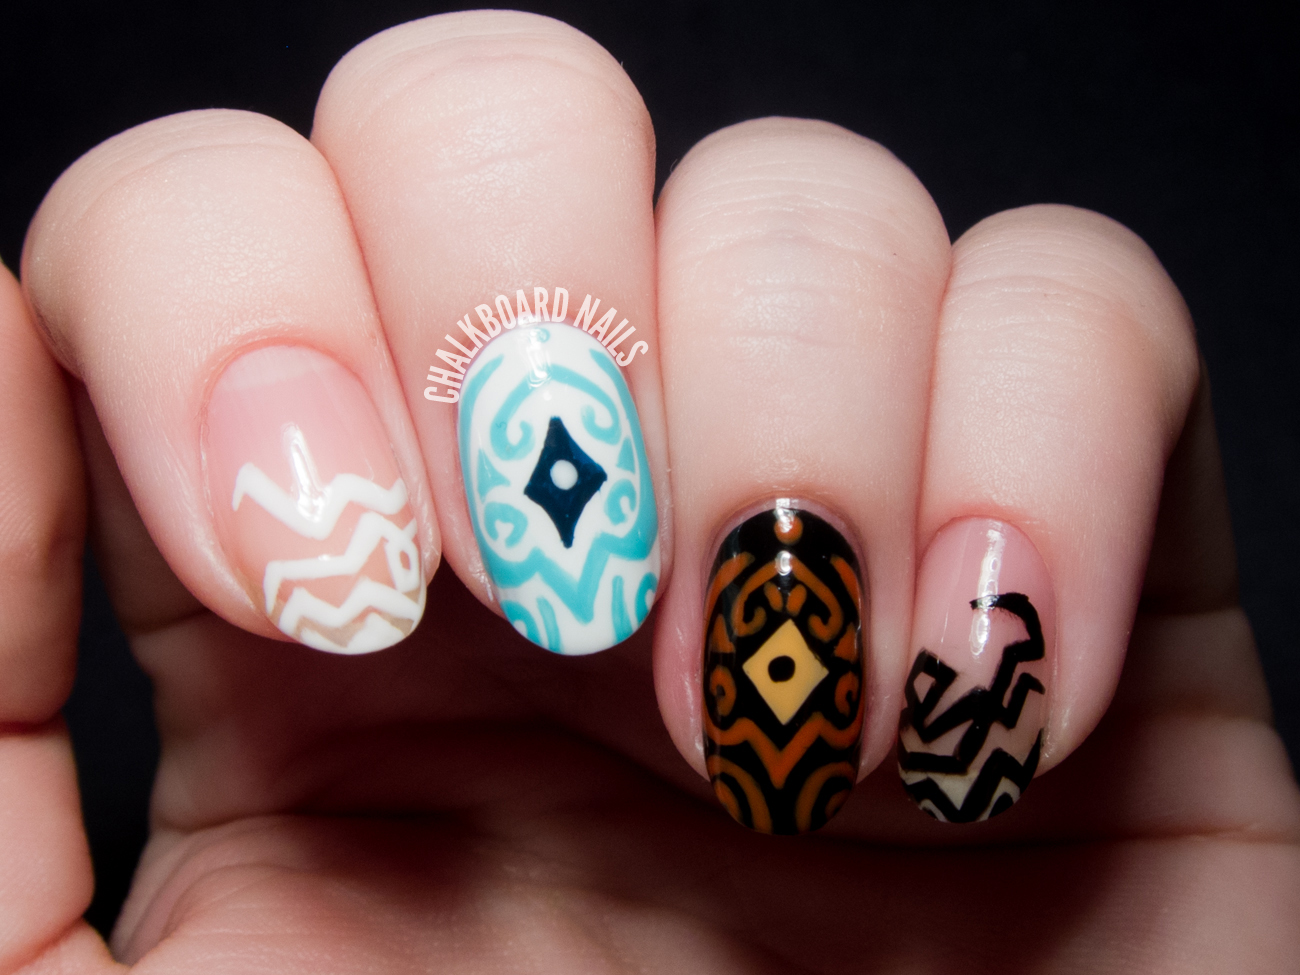 Raava and Vaatu nail art by @chalkboardnails